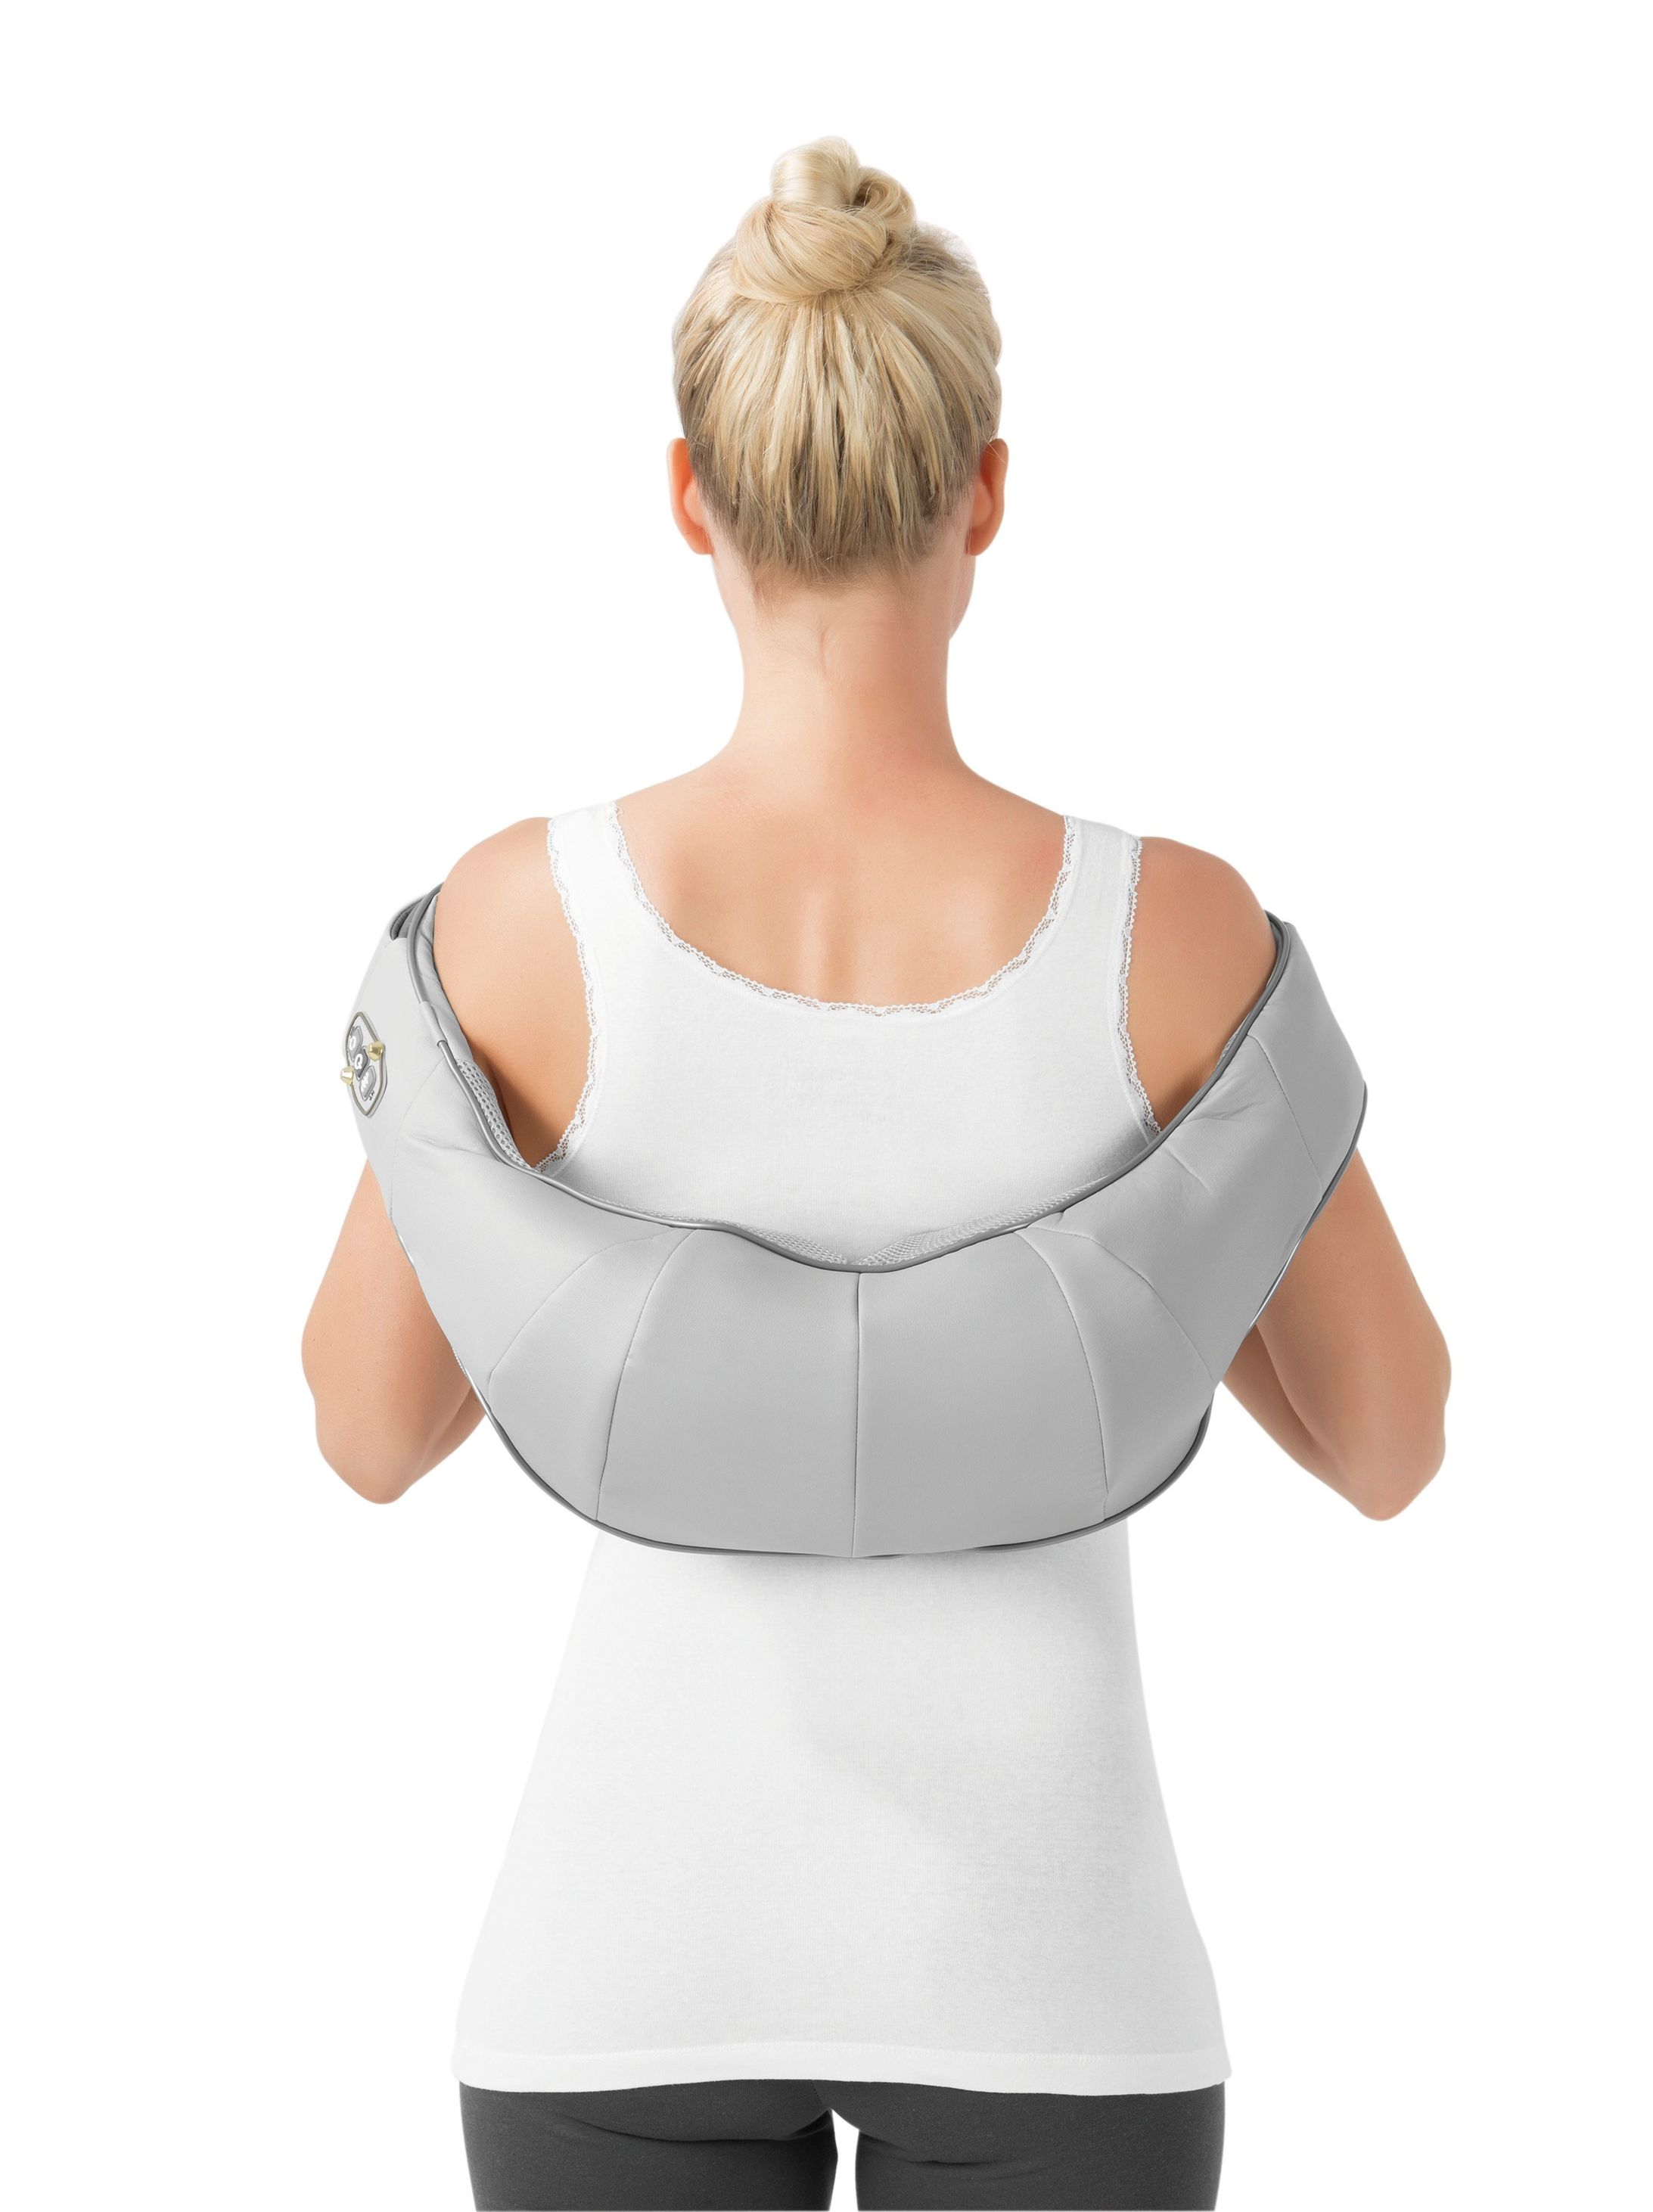 VITALmaxx Shiatsu Massagegerät für Nacken & Schultern | Weltbild.de